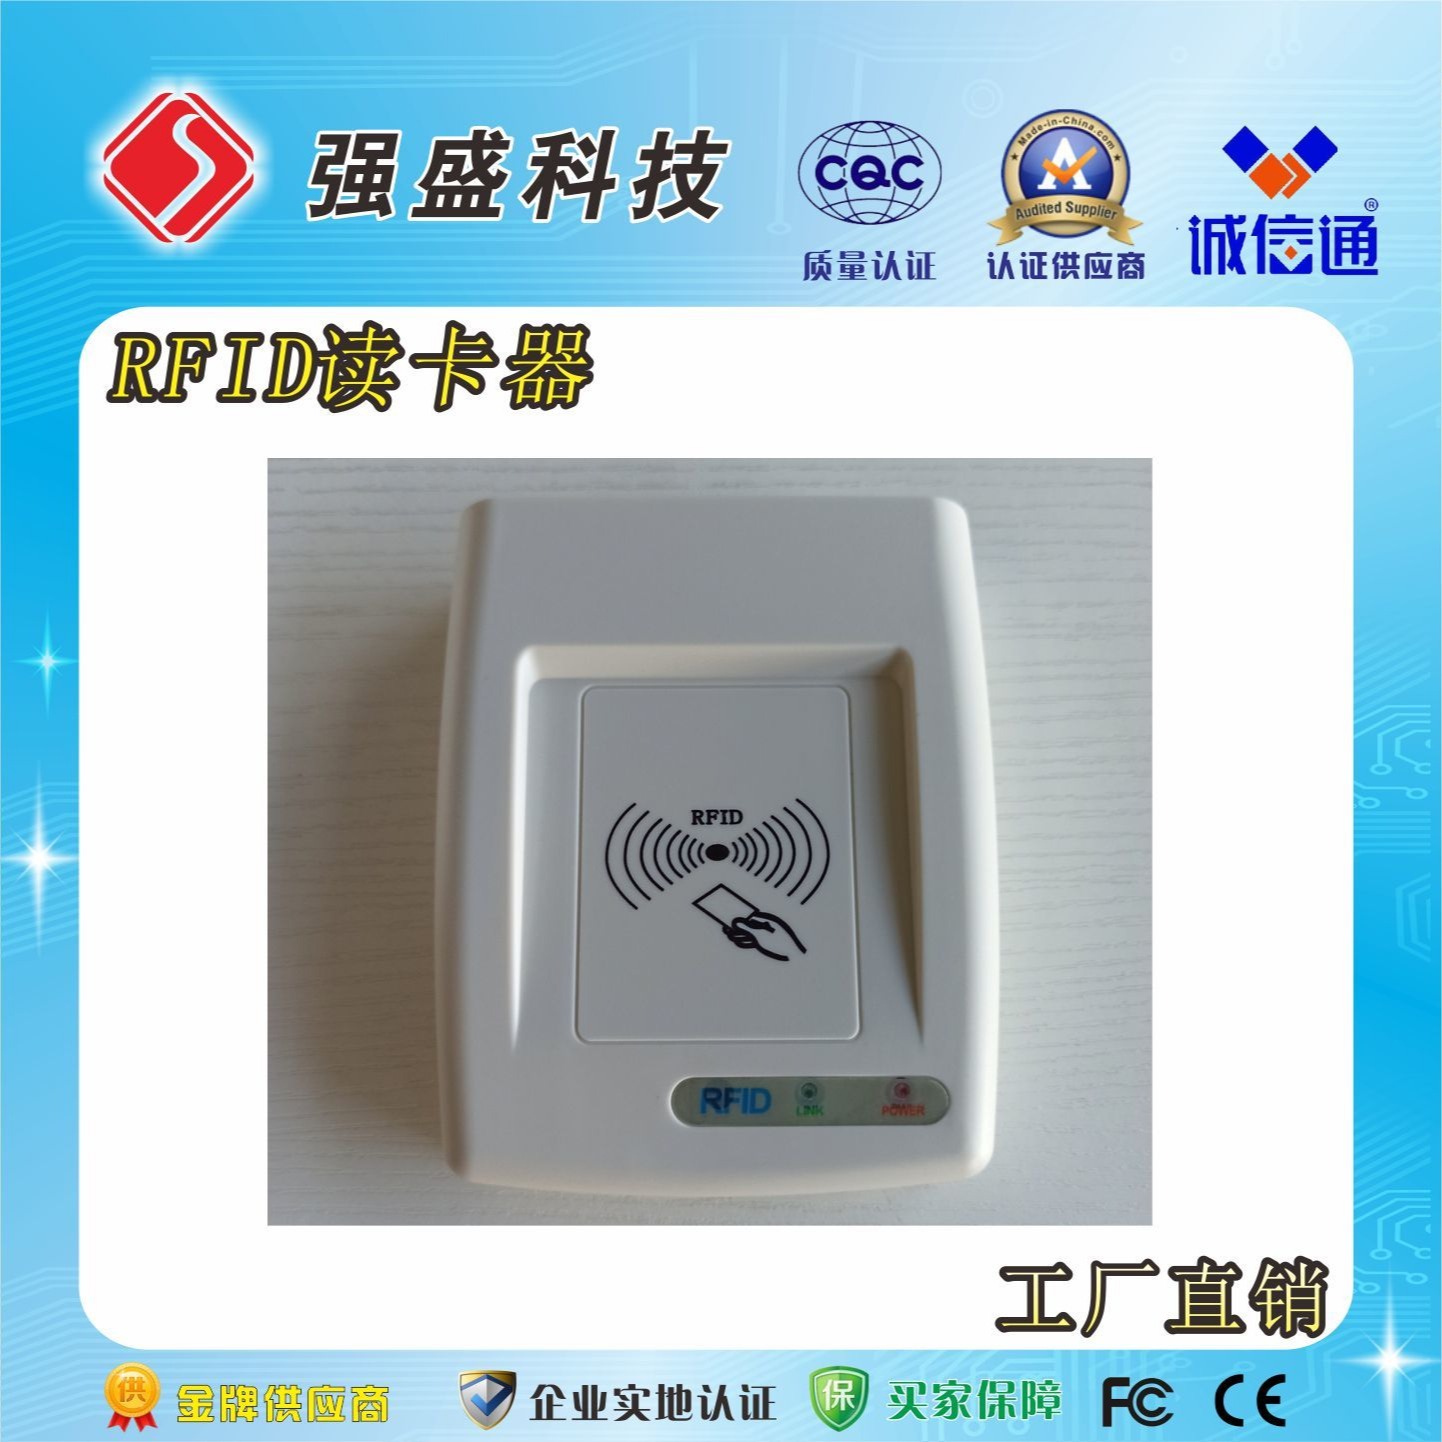 供应IC卡读卡器 QS-IC02 USB接口IC读卡器图片